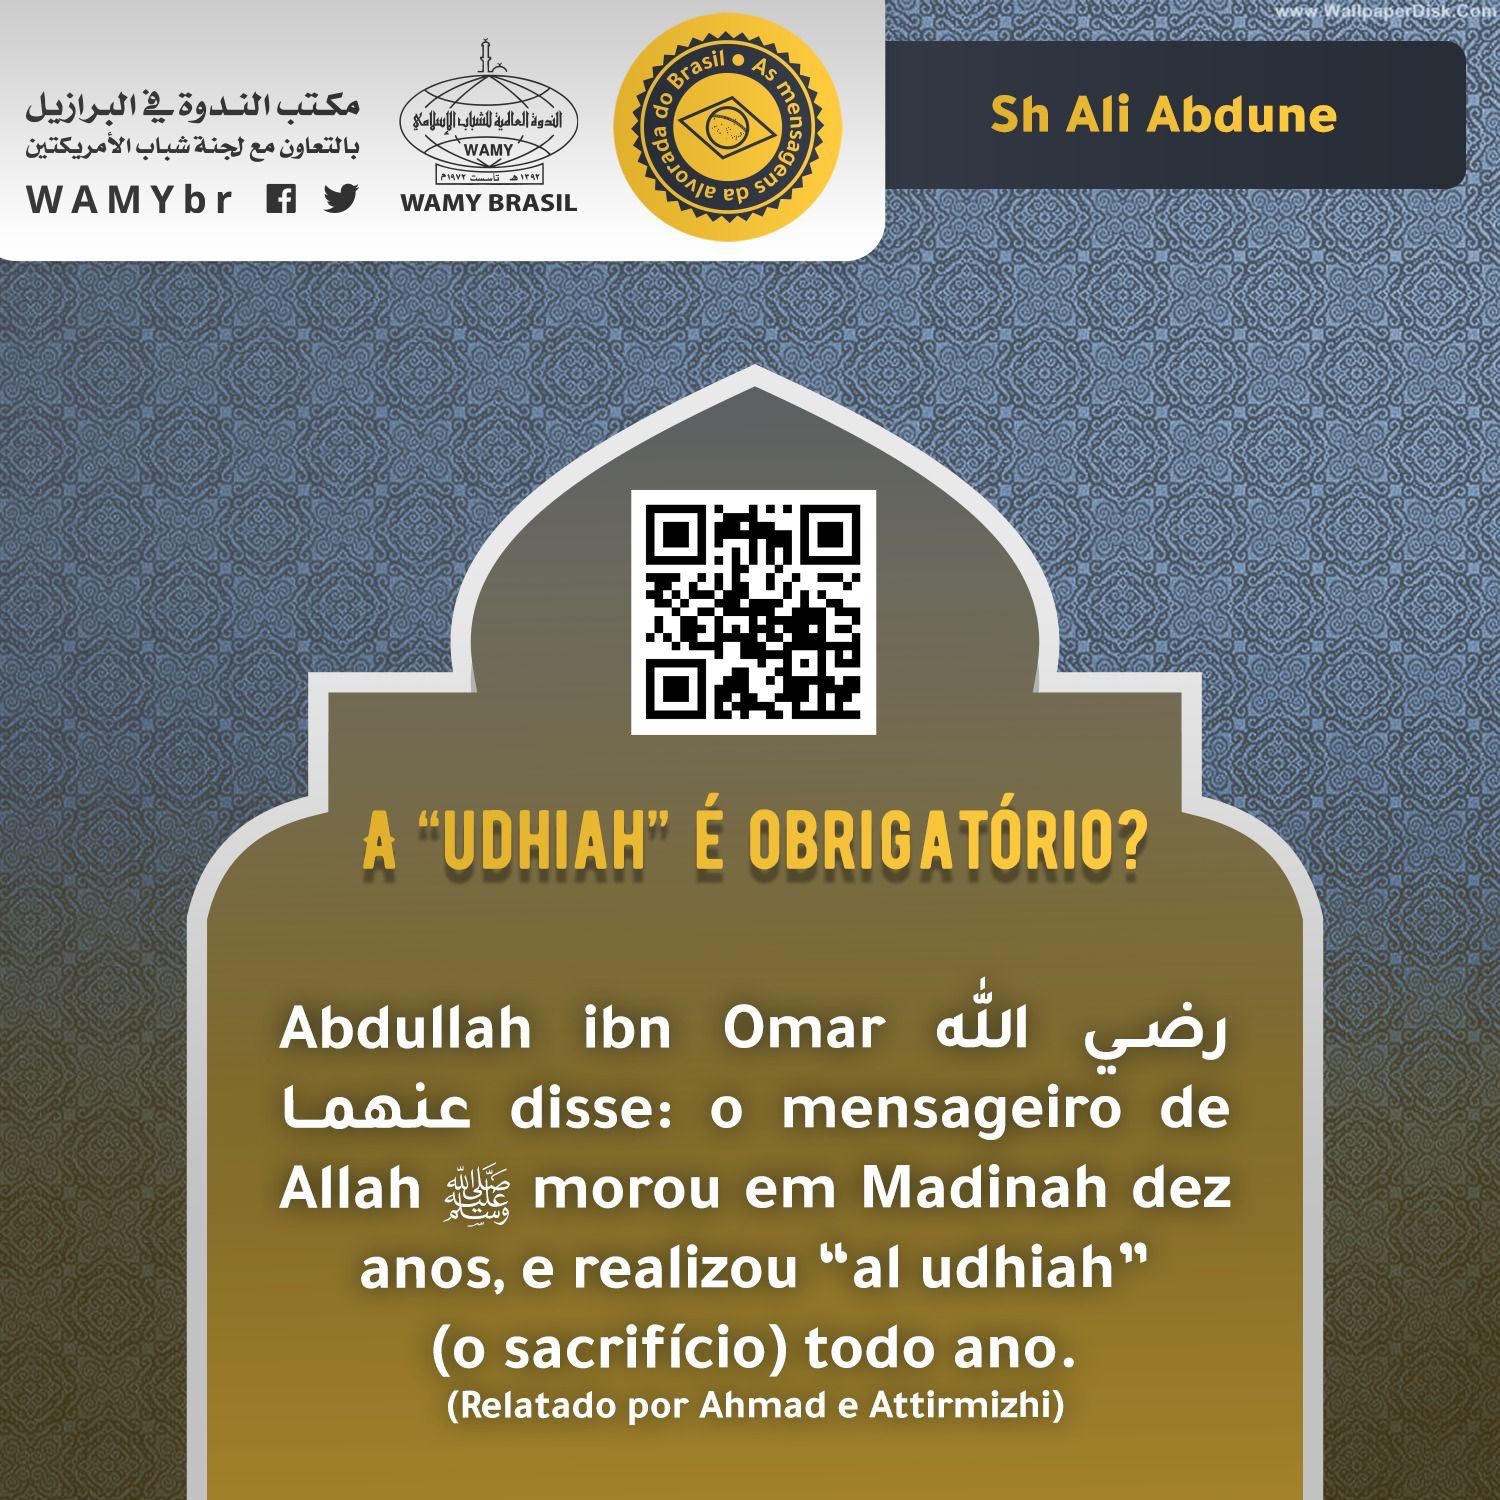 A “udhiah” é obrigatório?